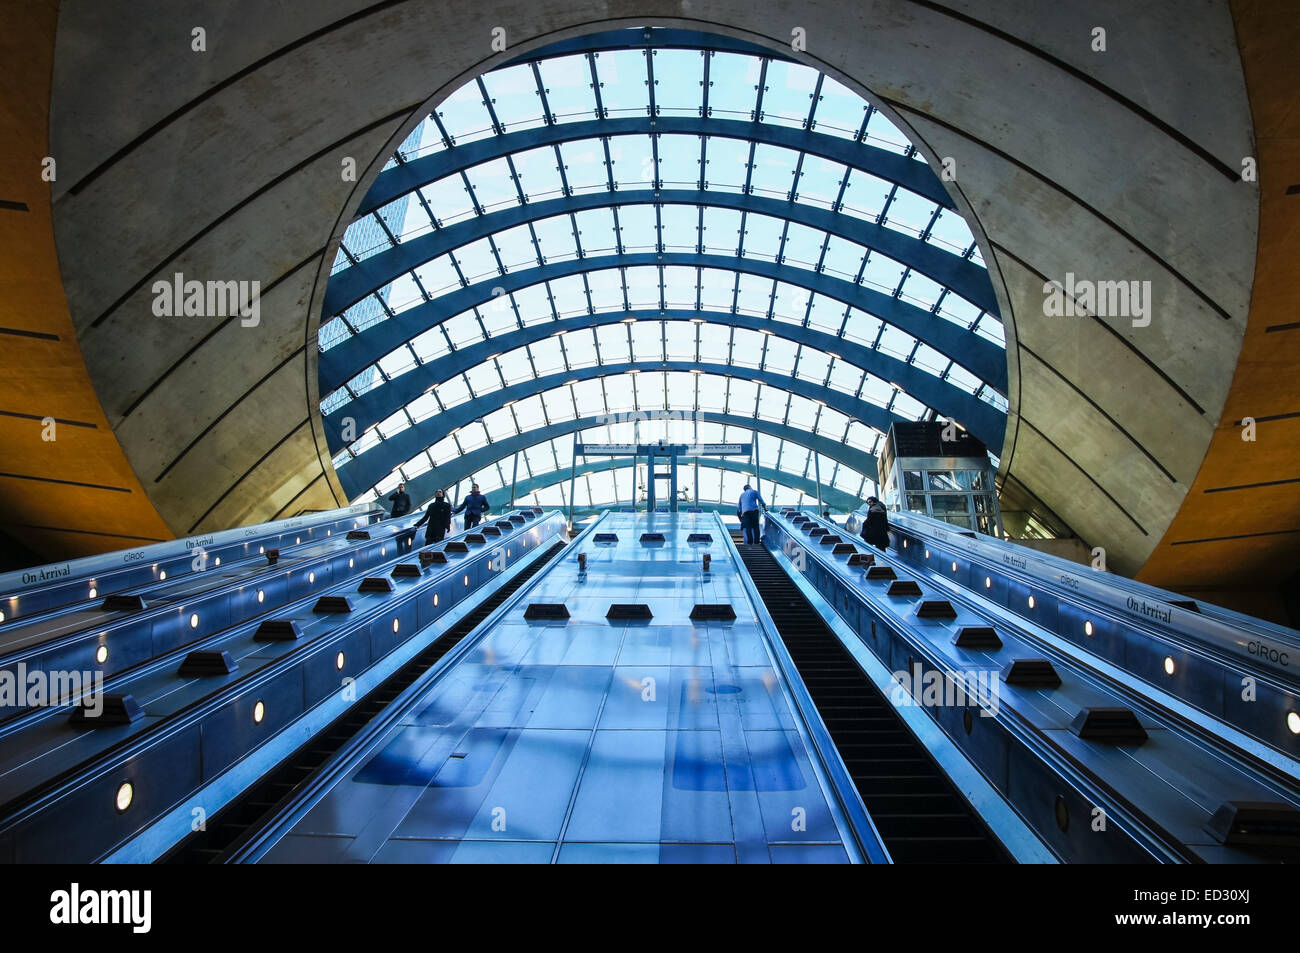 Escaliers mécaniques dans la station de métro Canary Wharf, Londres Angleterre Royaume-Uni Banque D'Images